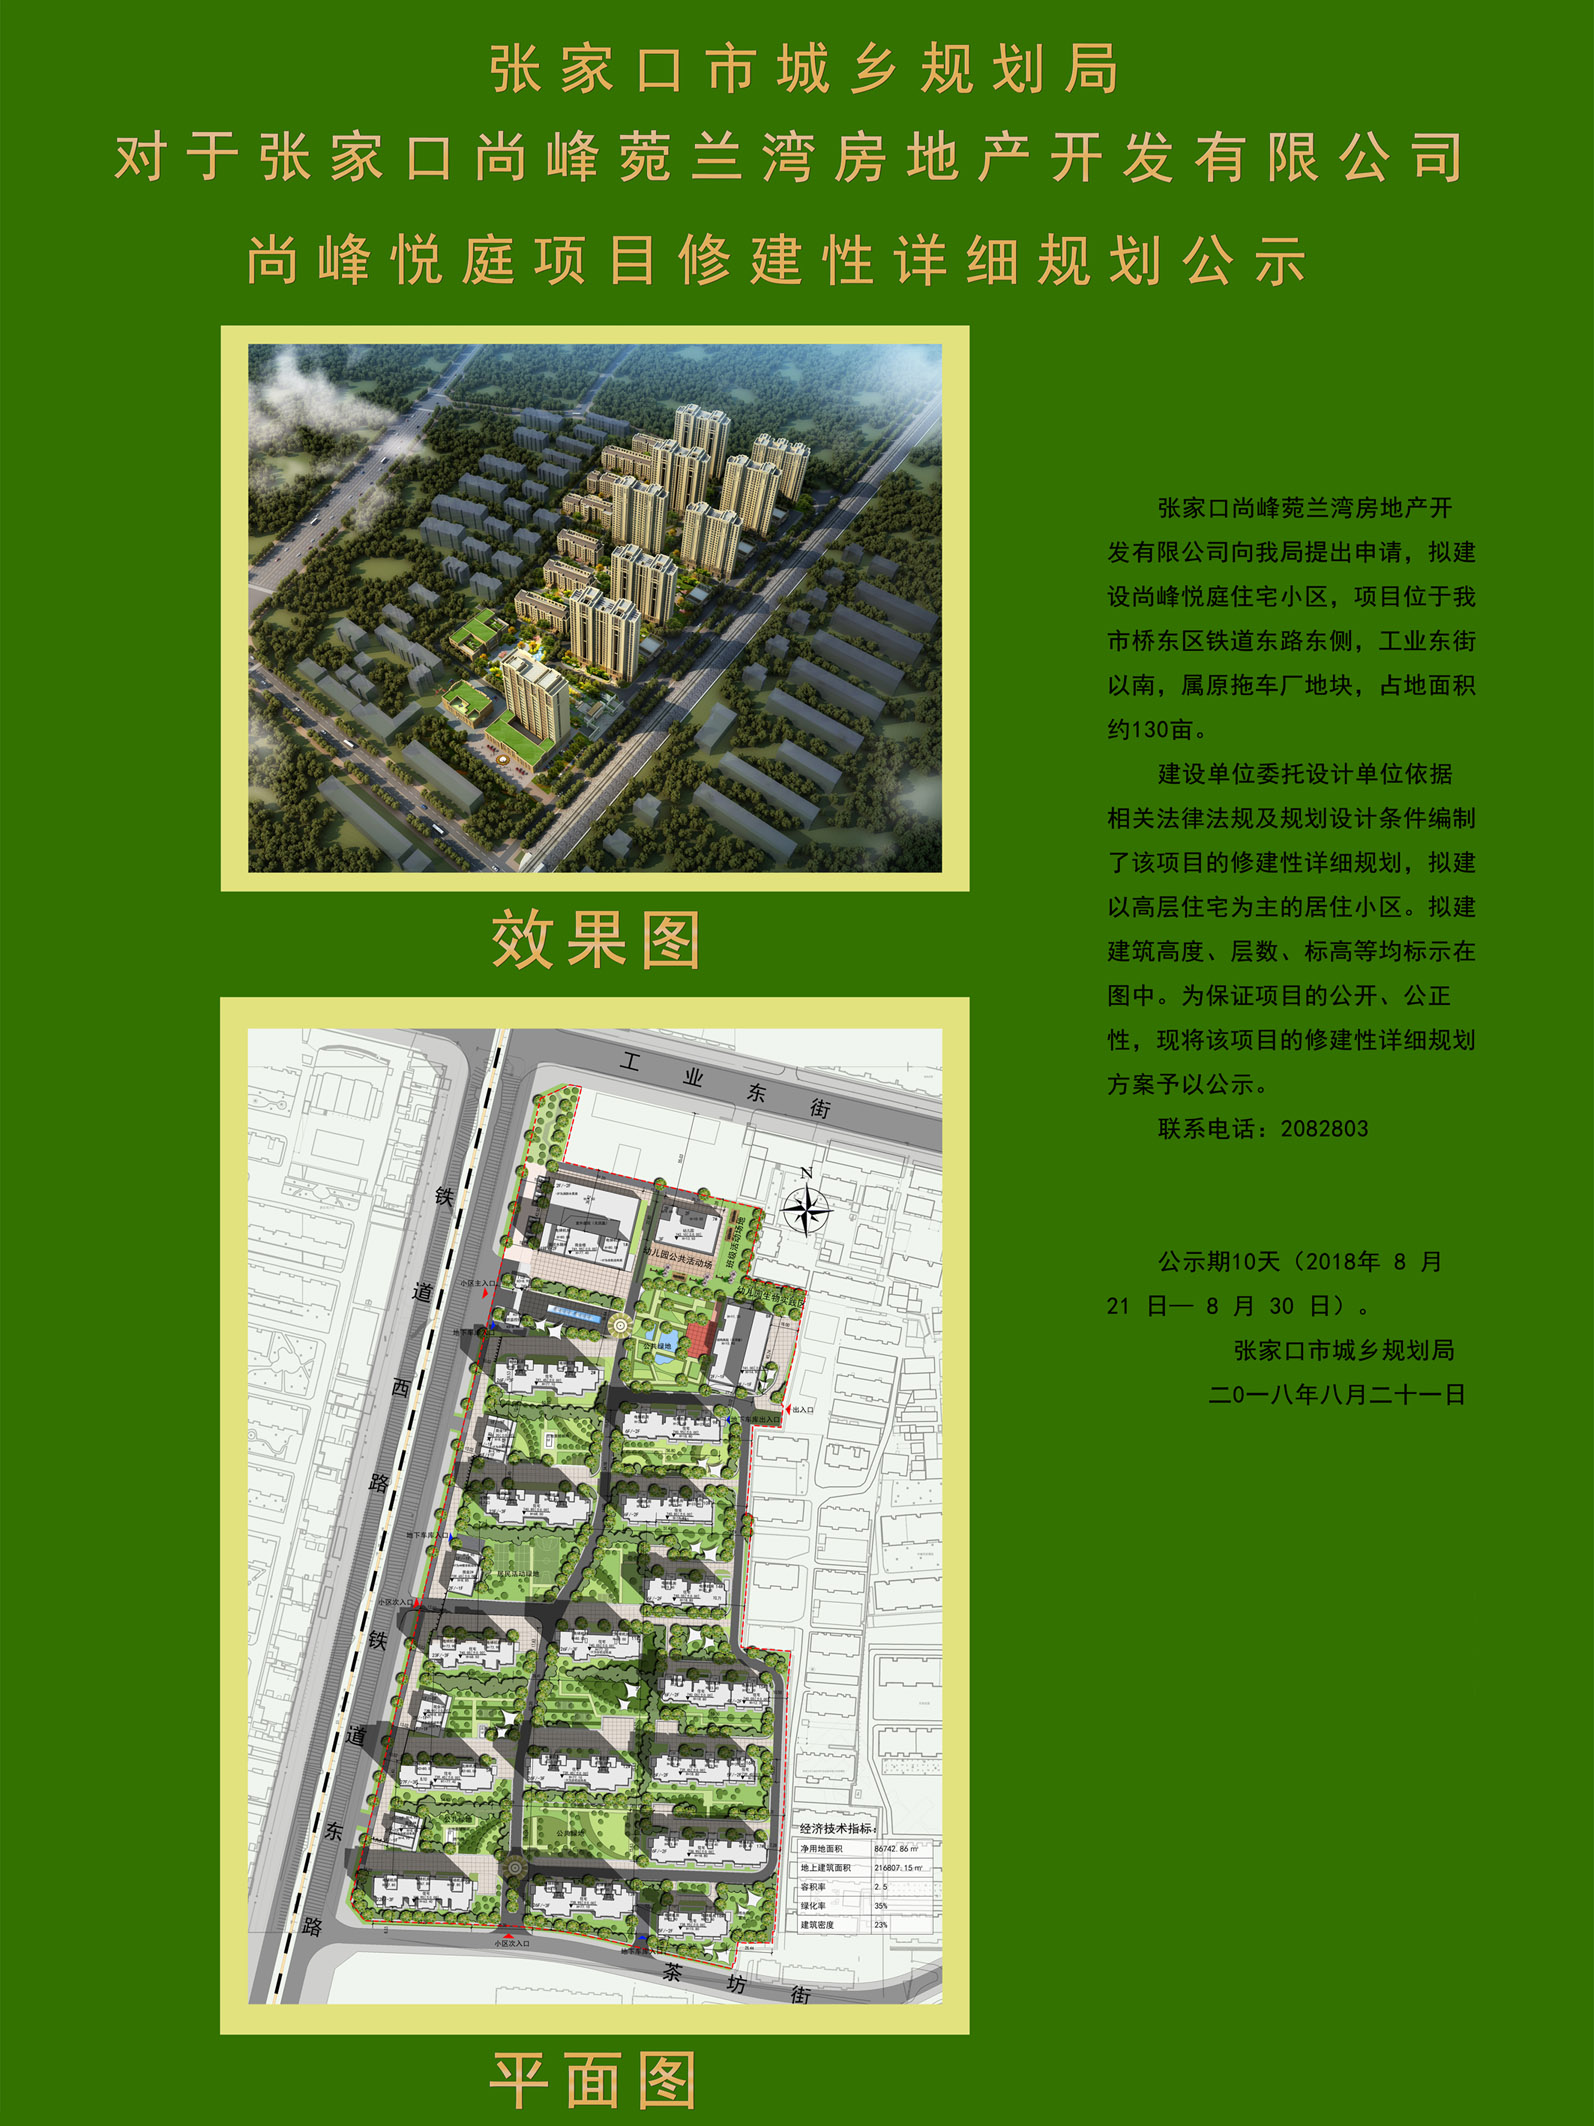 张家口市城乡规划局:尚峰悦庭(拖车厂旧址)项目规划公示